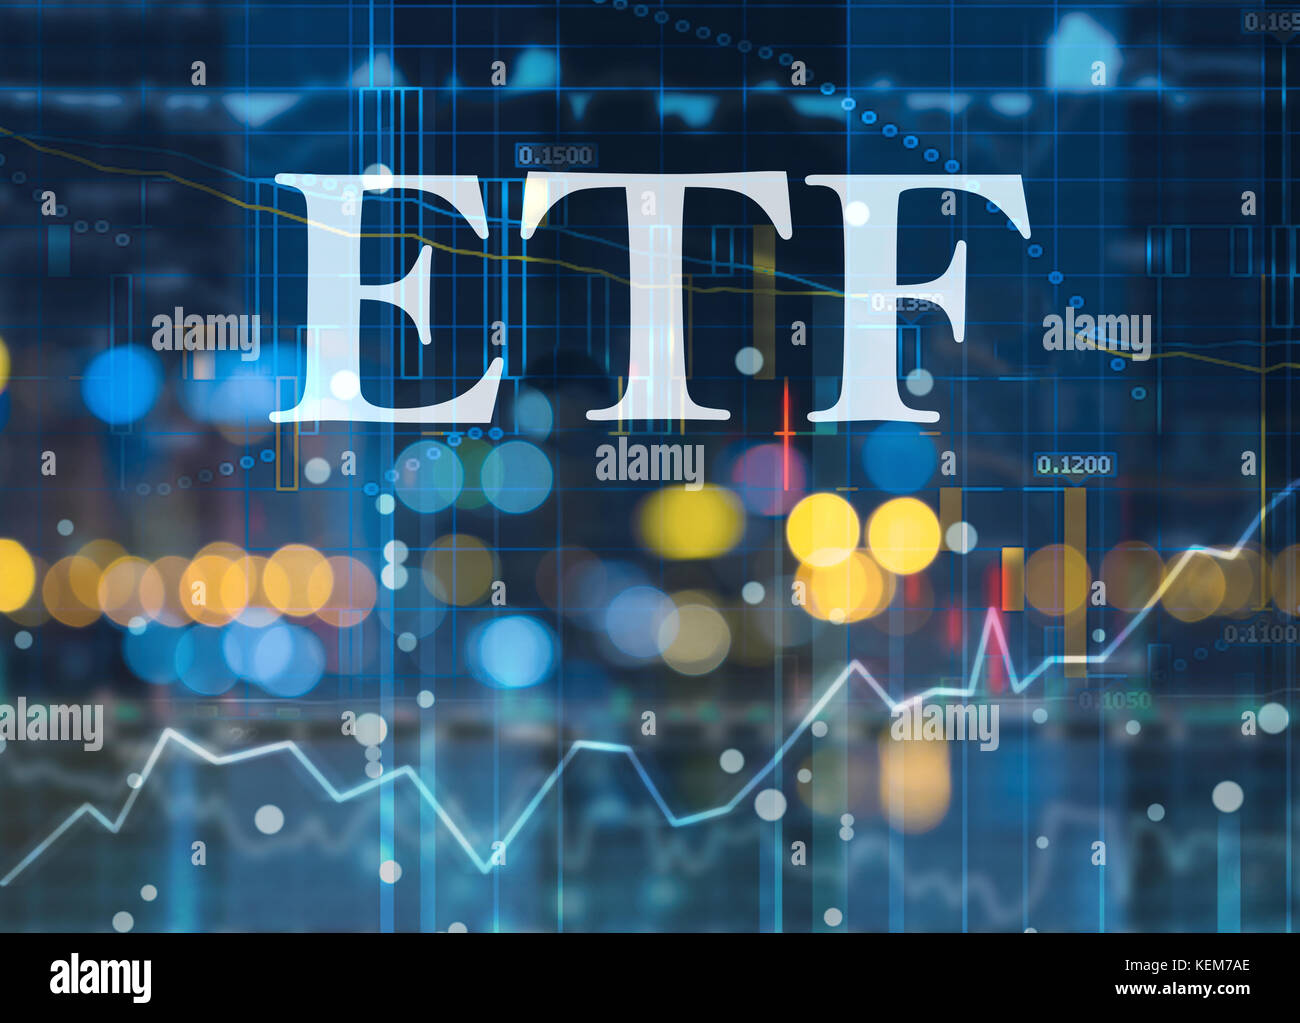 Etf exchange traded funds, investimento passivo in indice di fondi sui mercati dei capitali Foto Stock